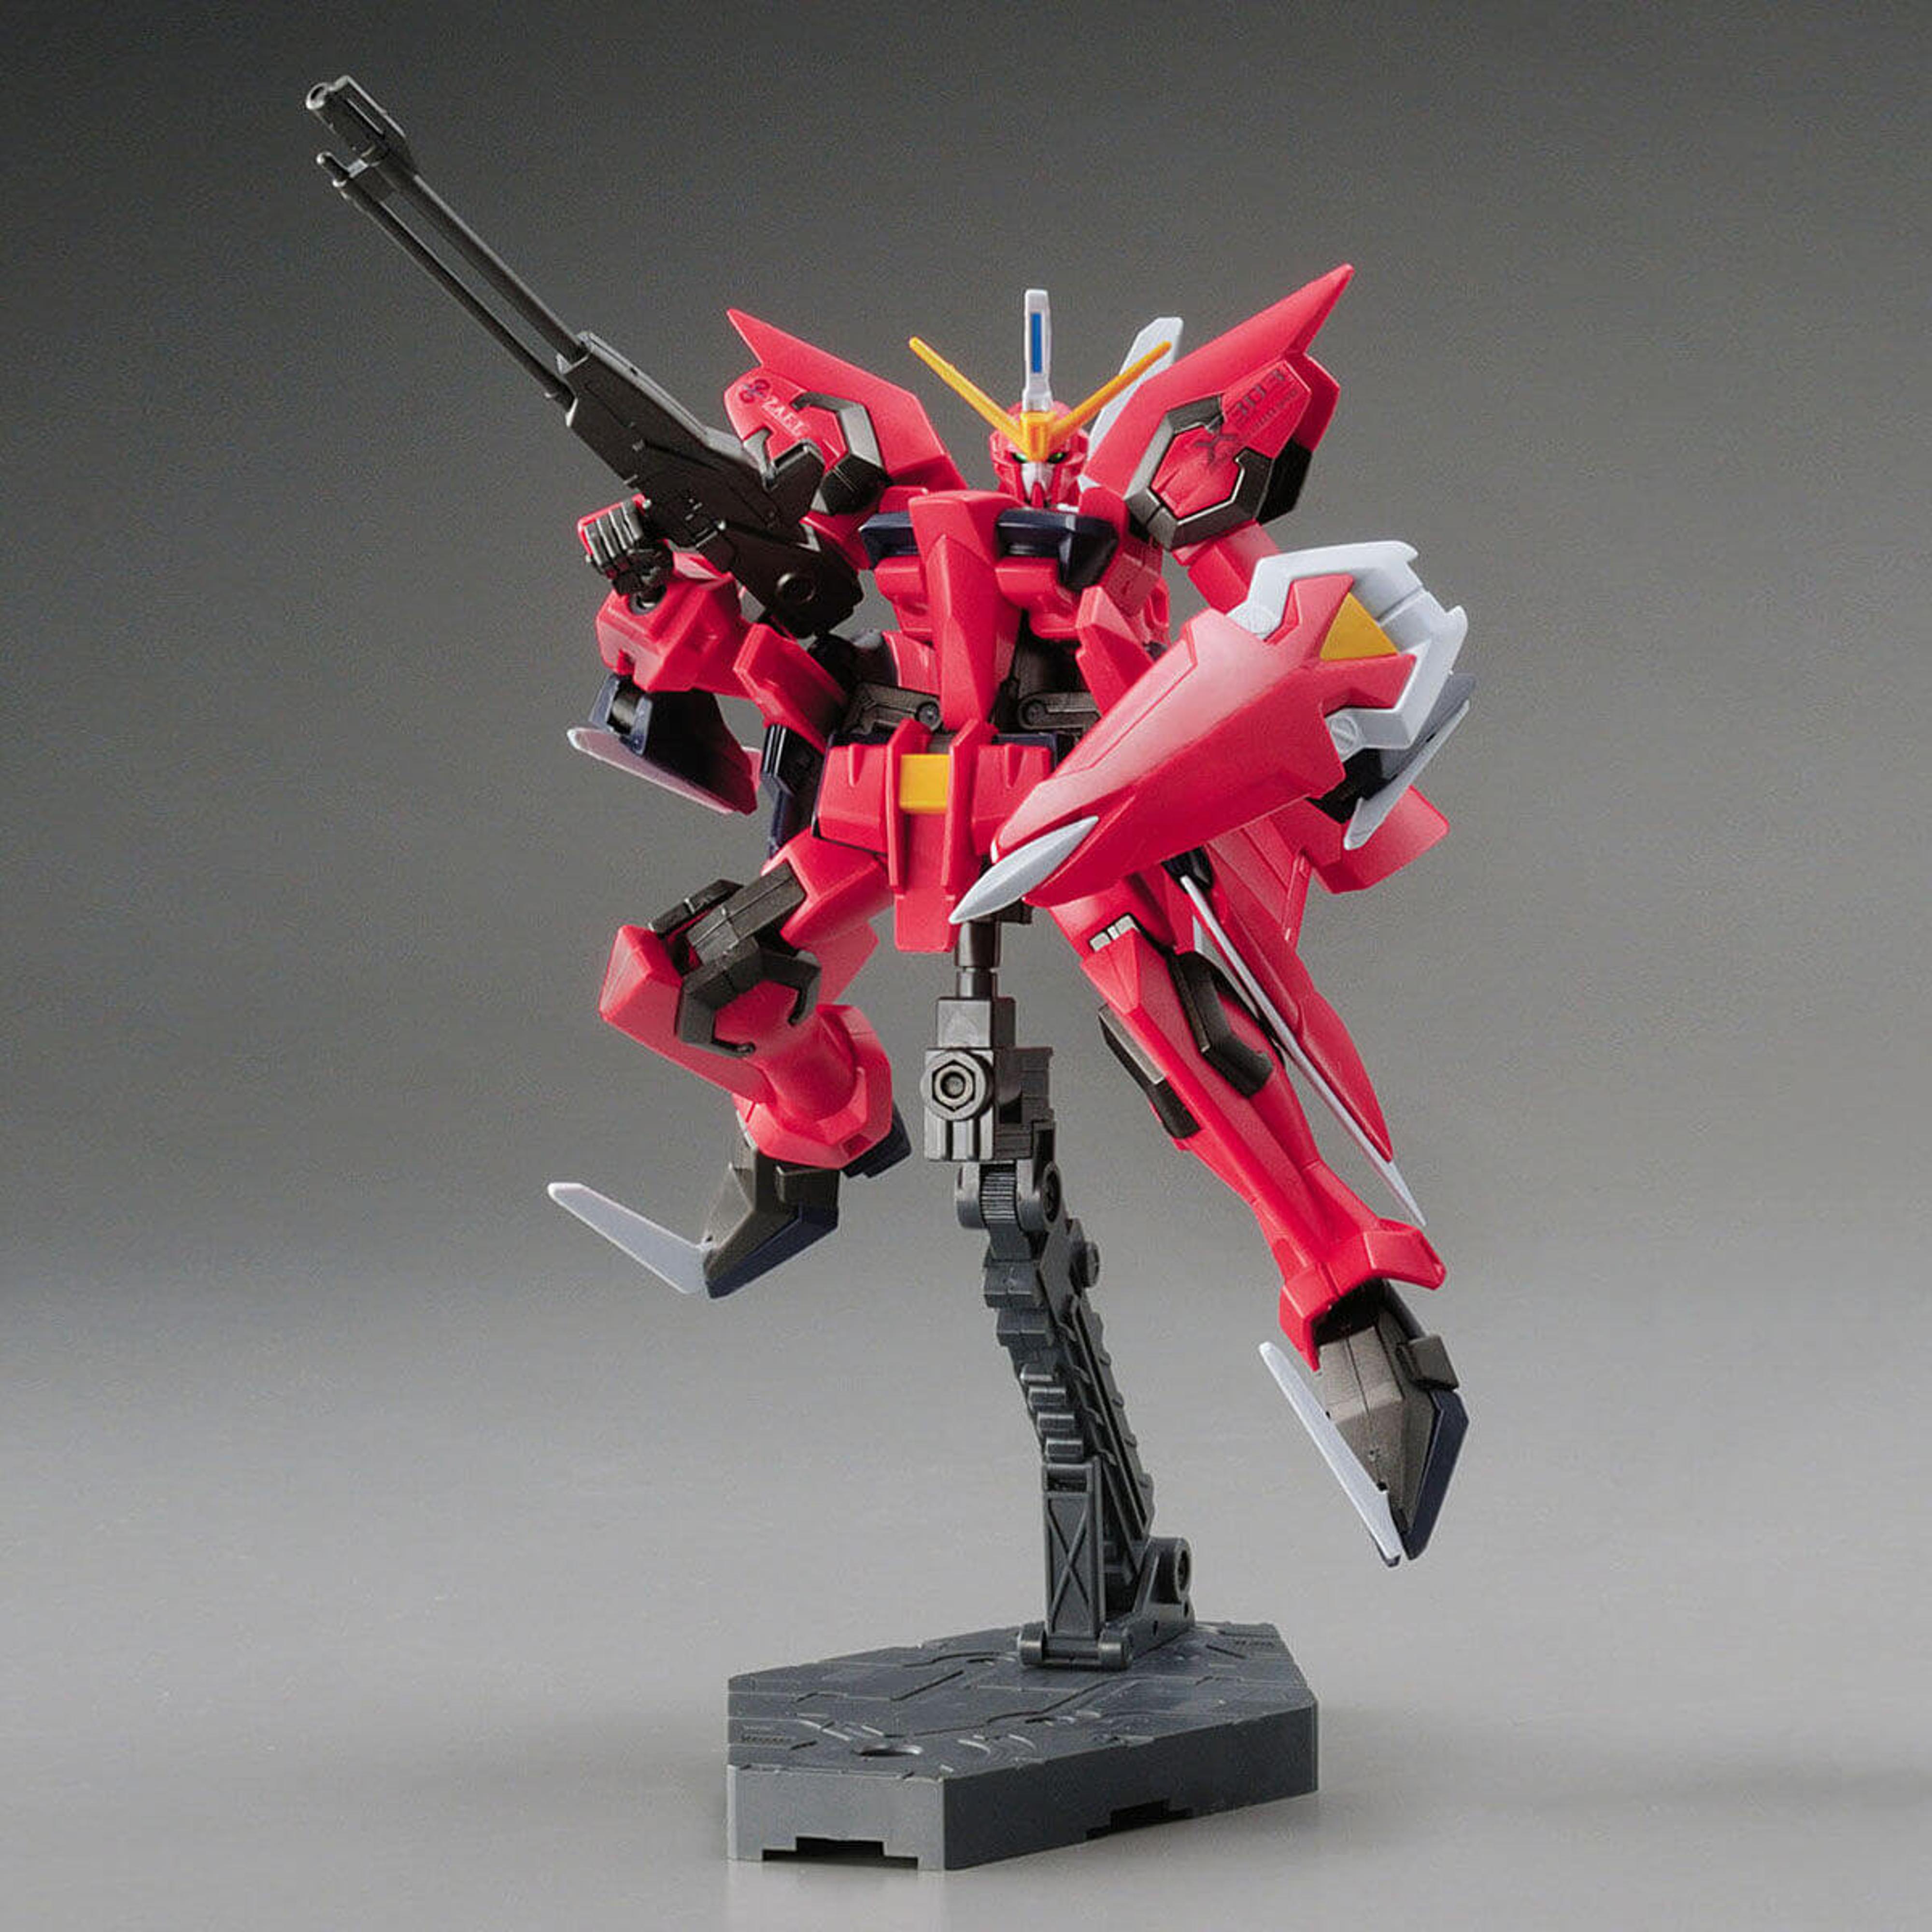 1/144 HG MSG:SEED R05 Aegis Gundam